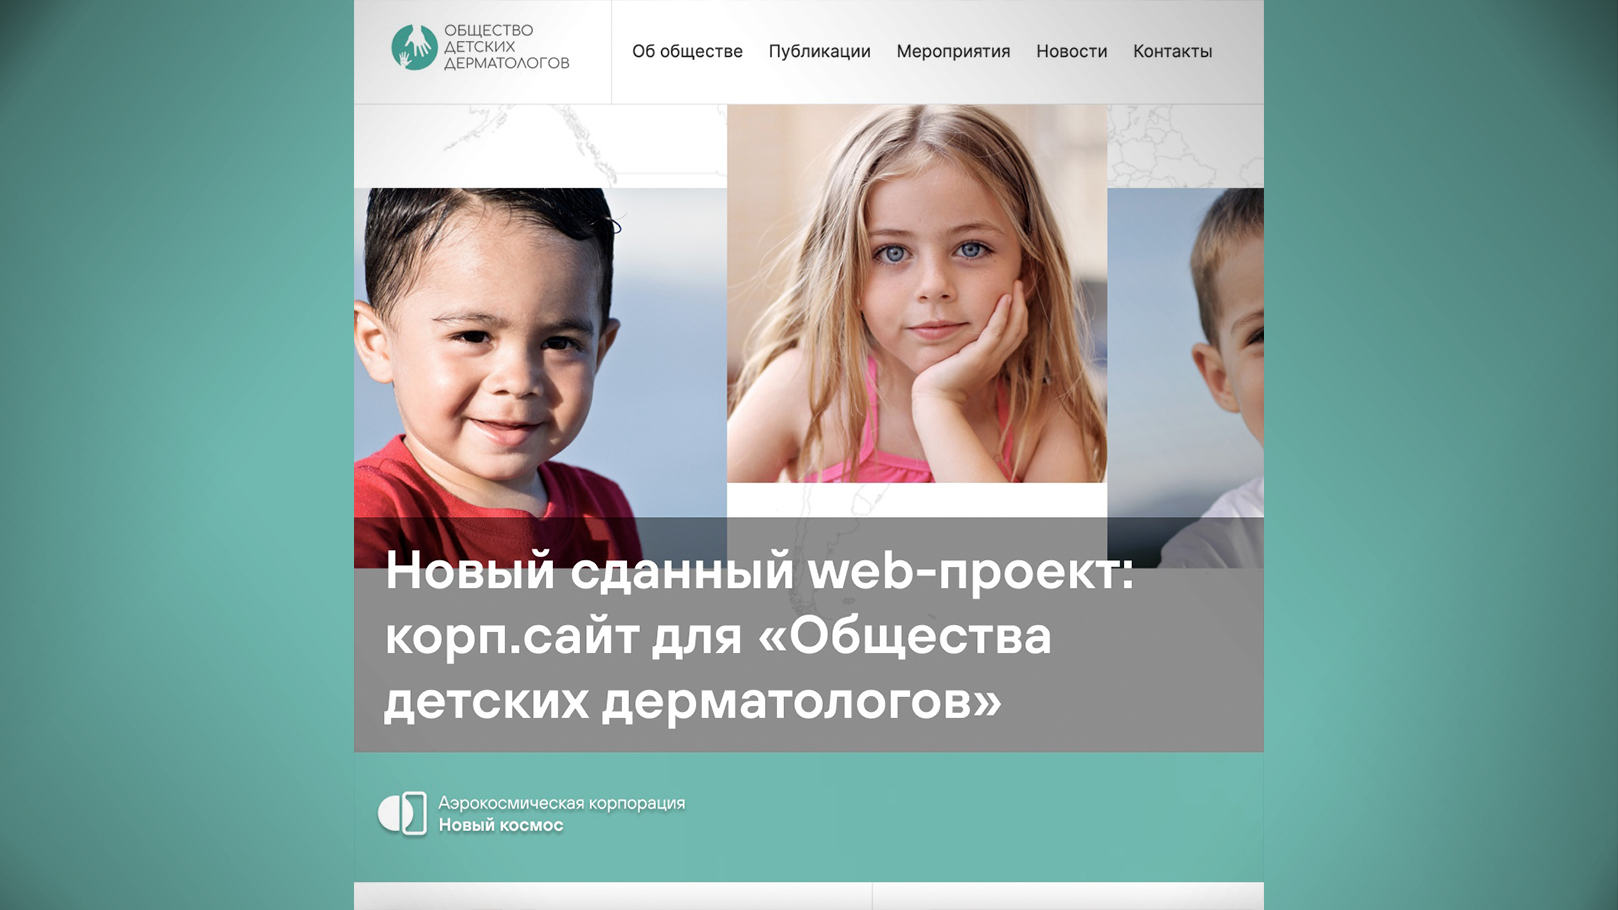 Новый сданный web-проект: корп.сайт для "Общества детских дерматологов"